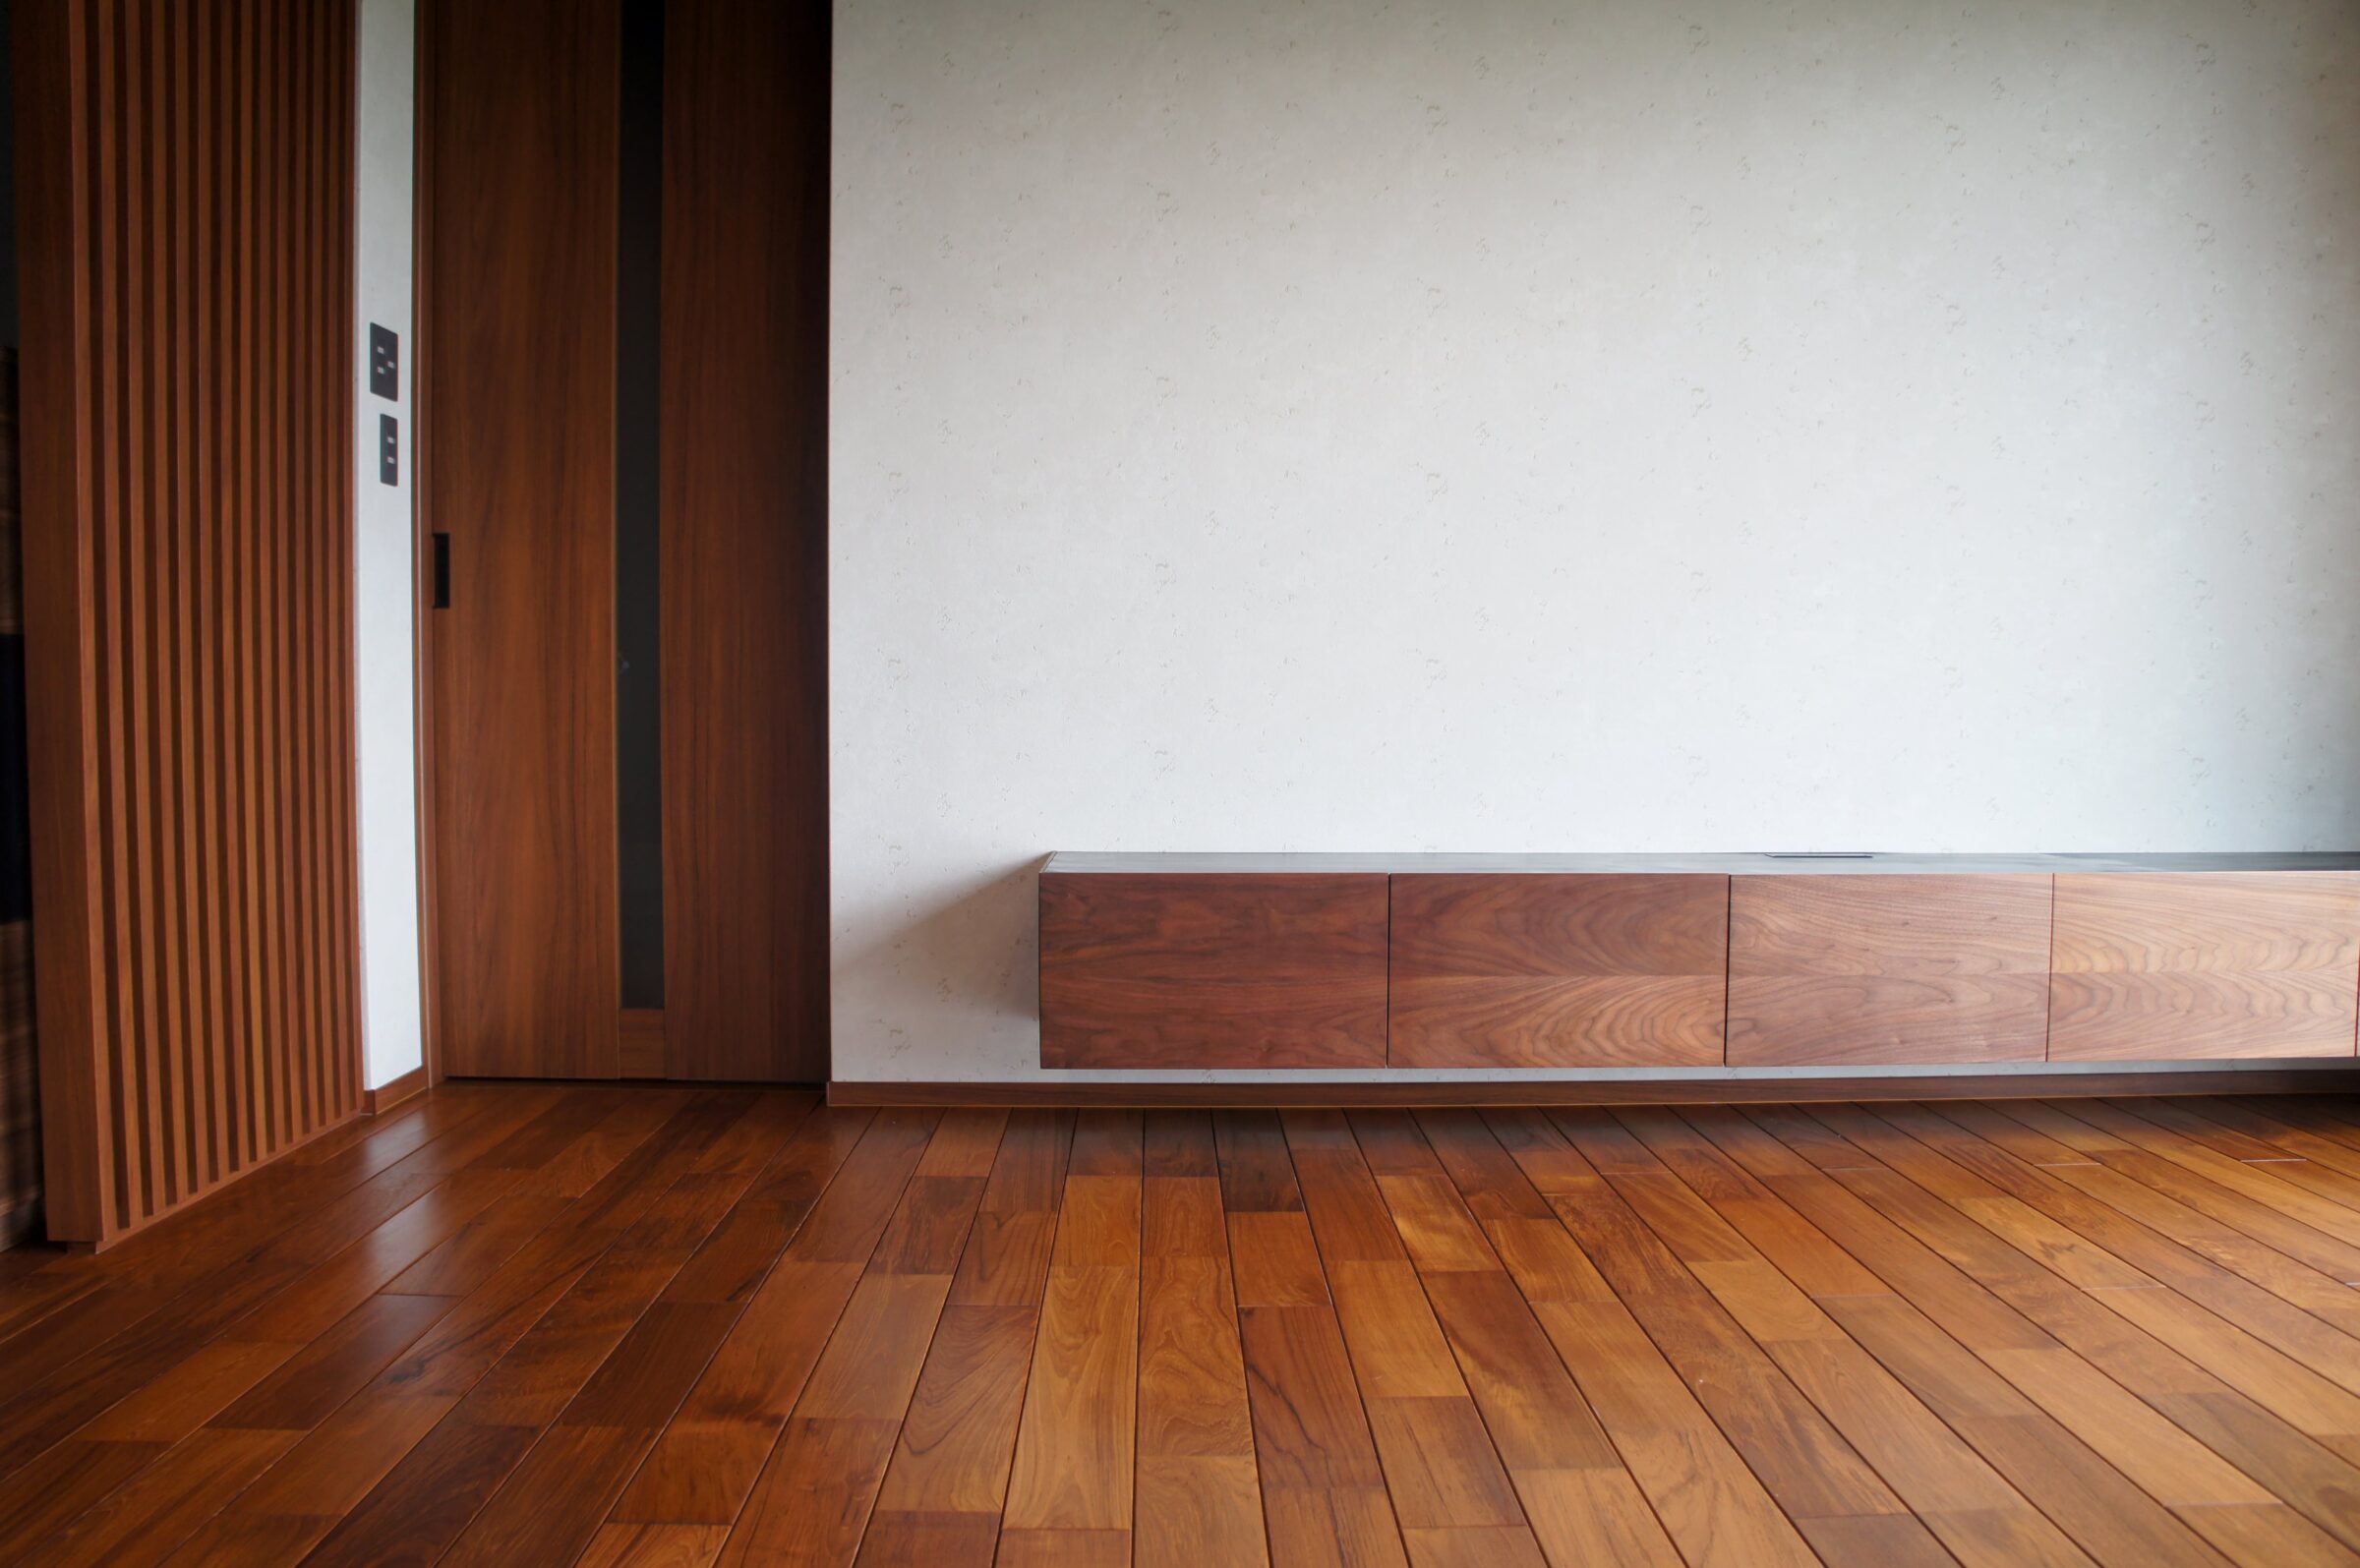 オーダー家具、東京、TVボード、ウォールナット、フロートタイプ